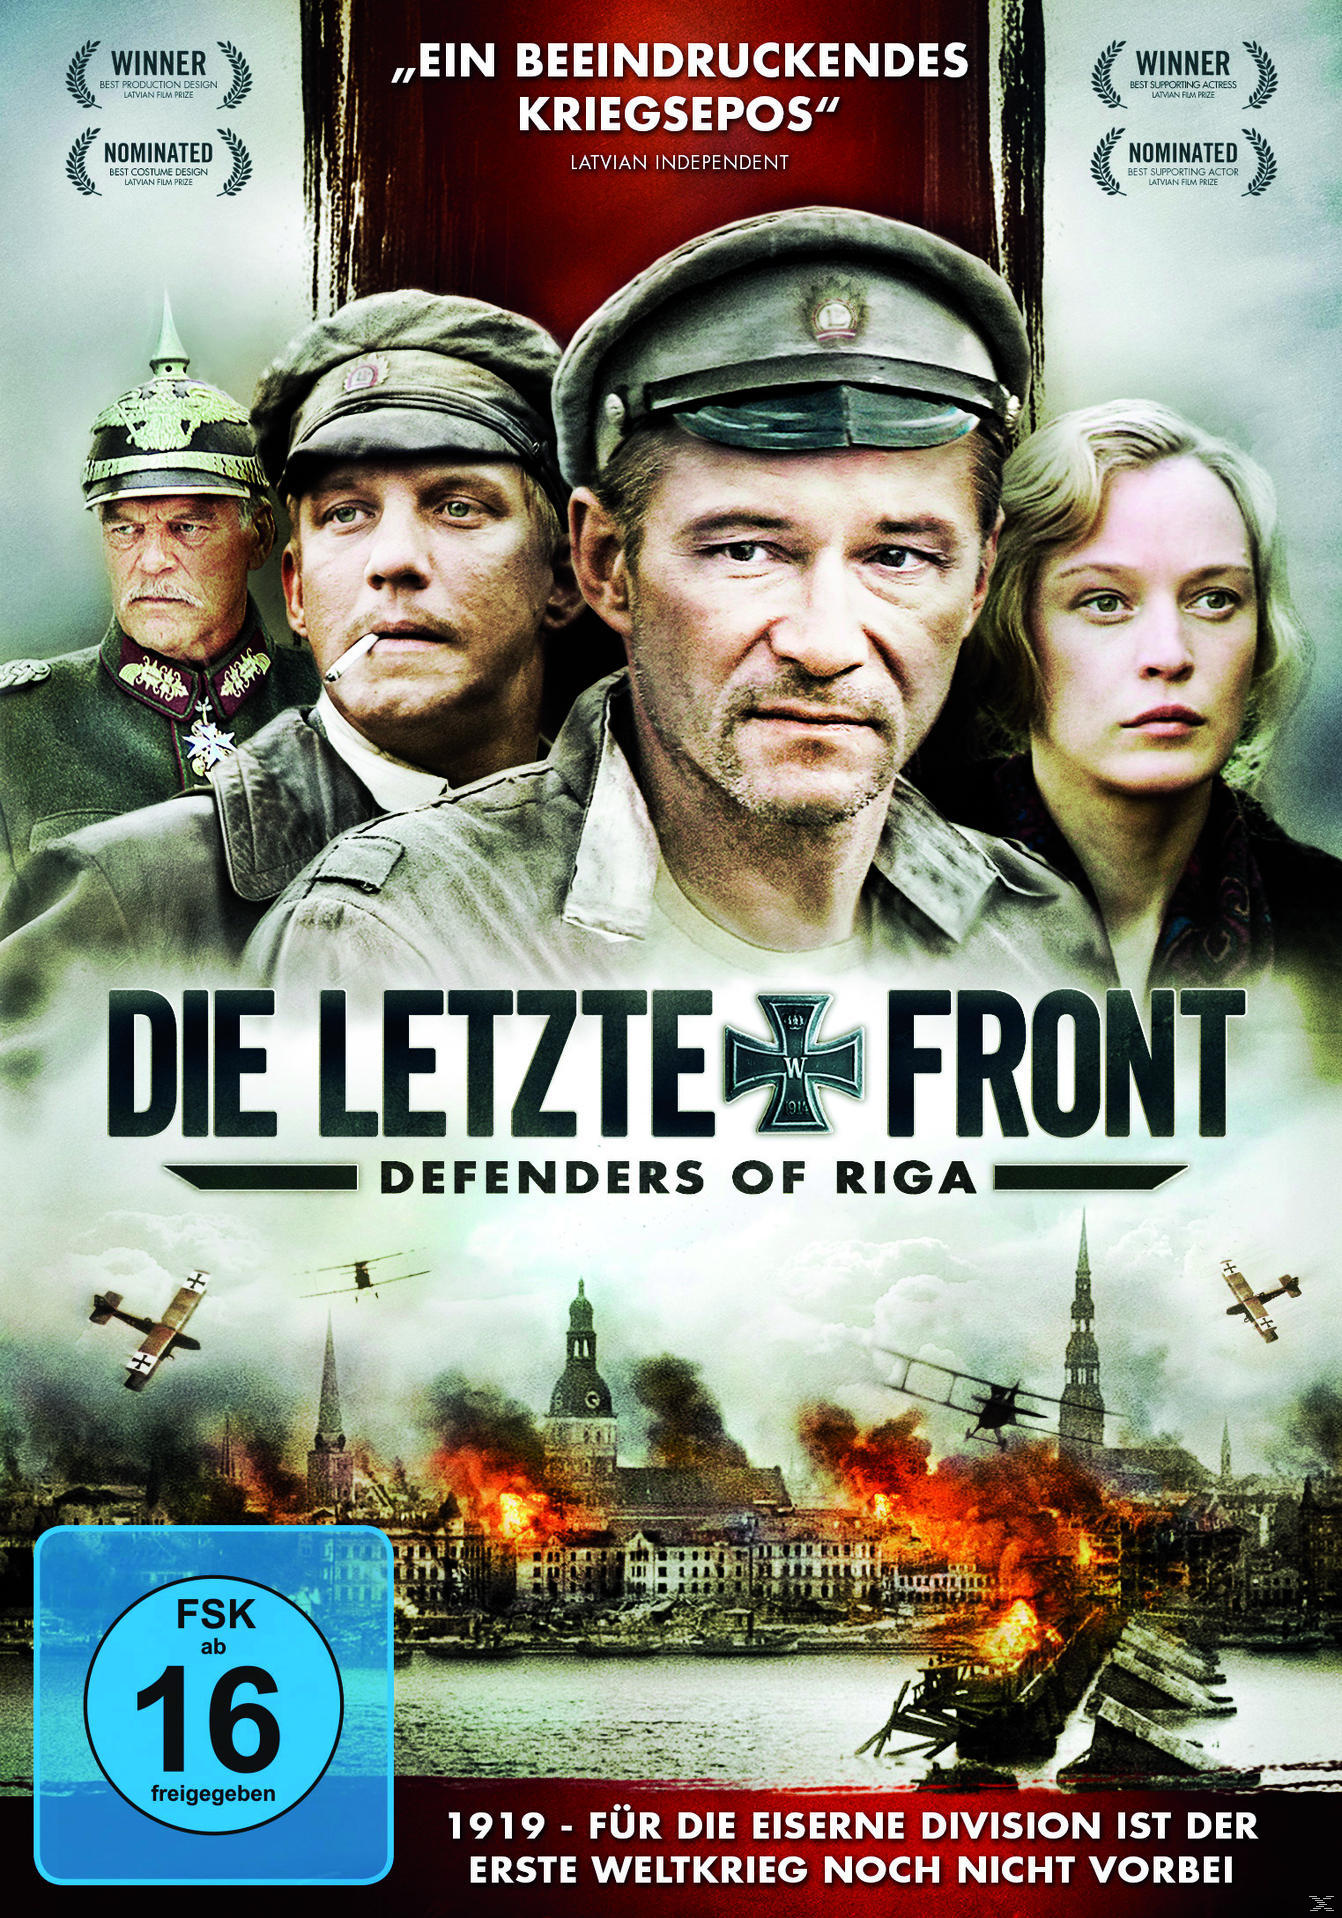 Die letzte Riga of Defenders Front - DVD